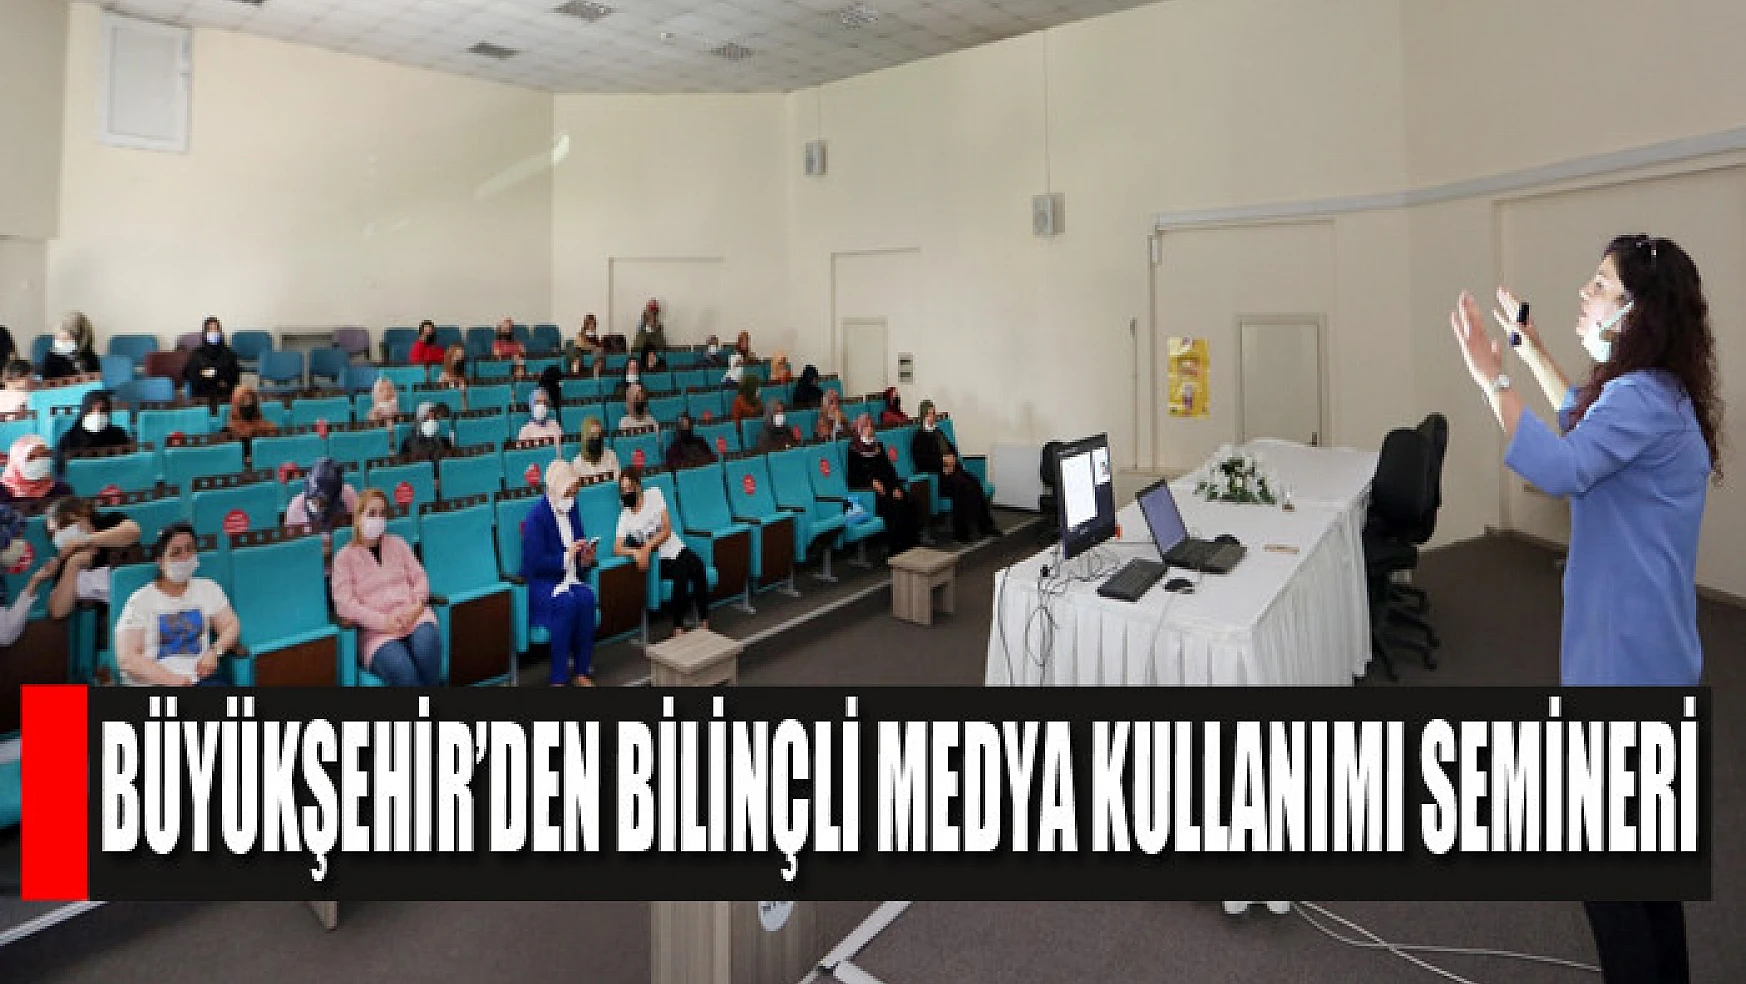 Büyükşehir'den bilinçli medya kullanımı semineri